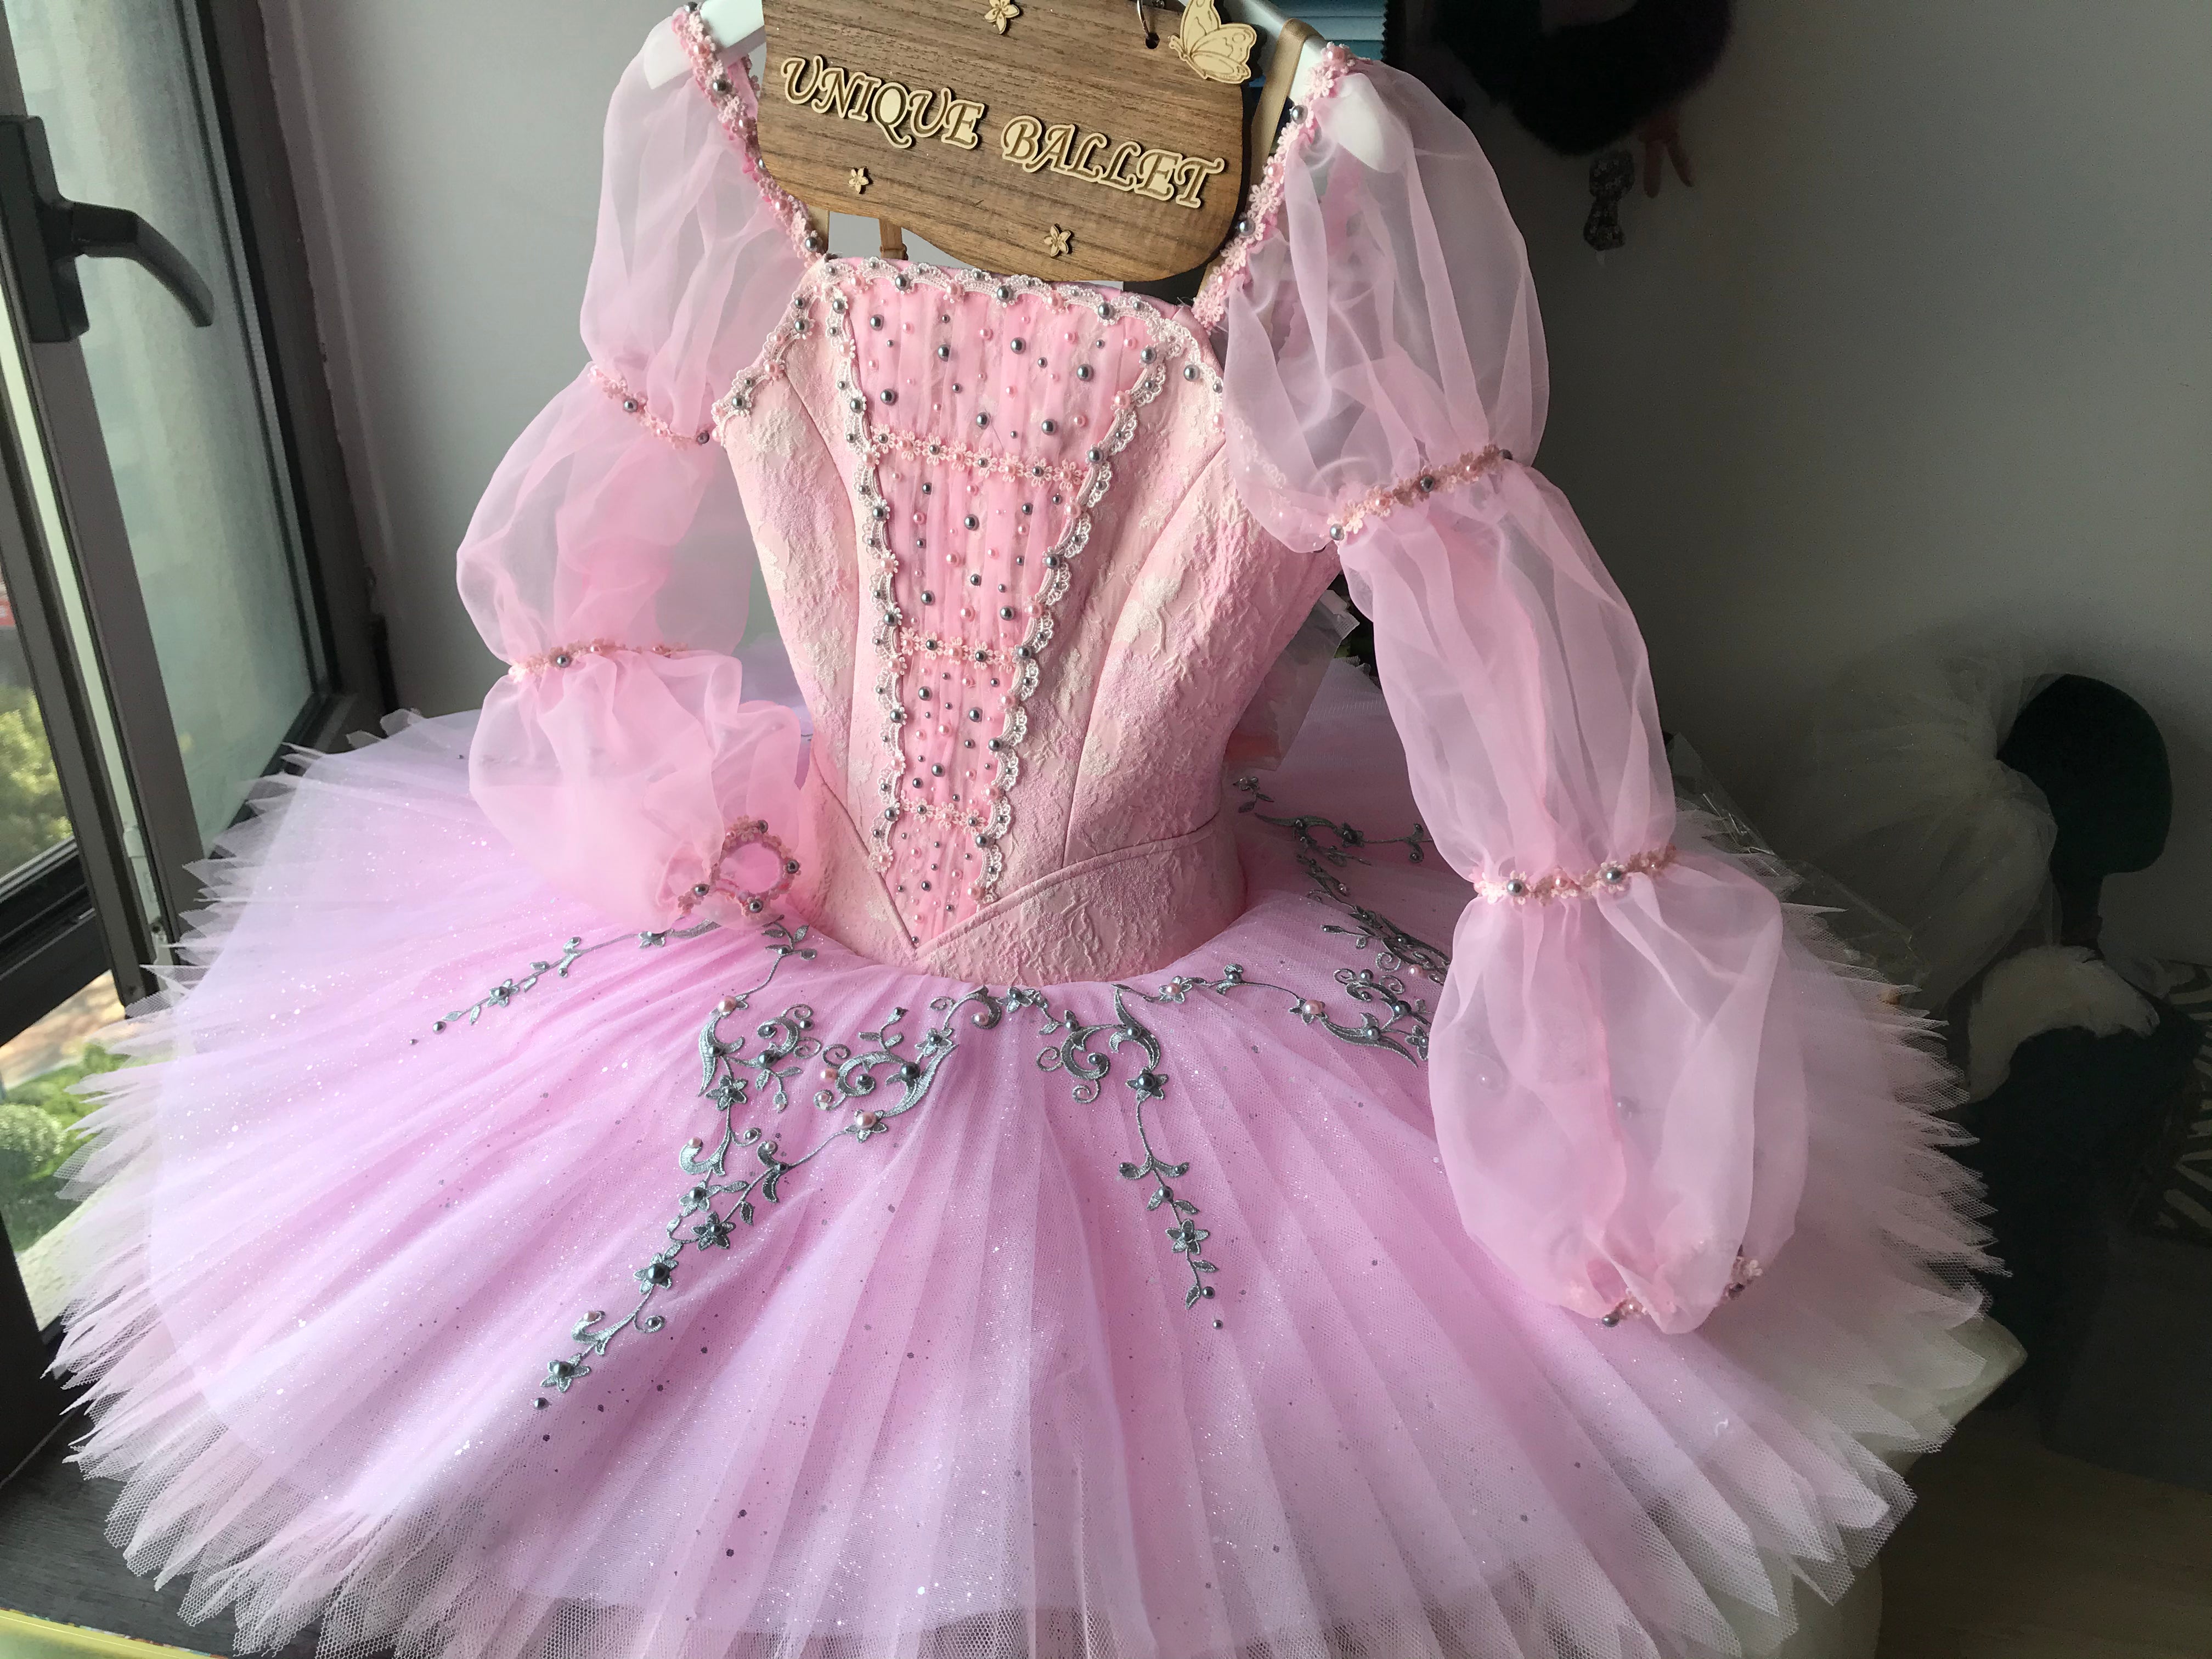 Jewel Ballet Tutu - Pink